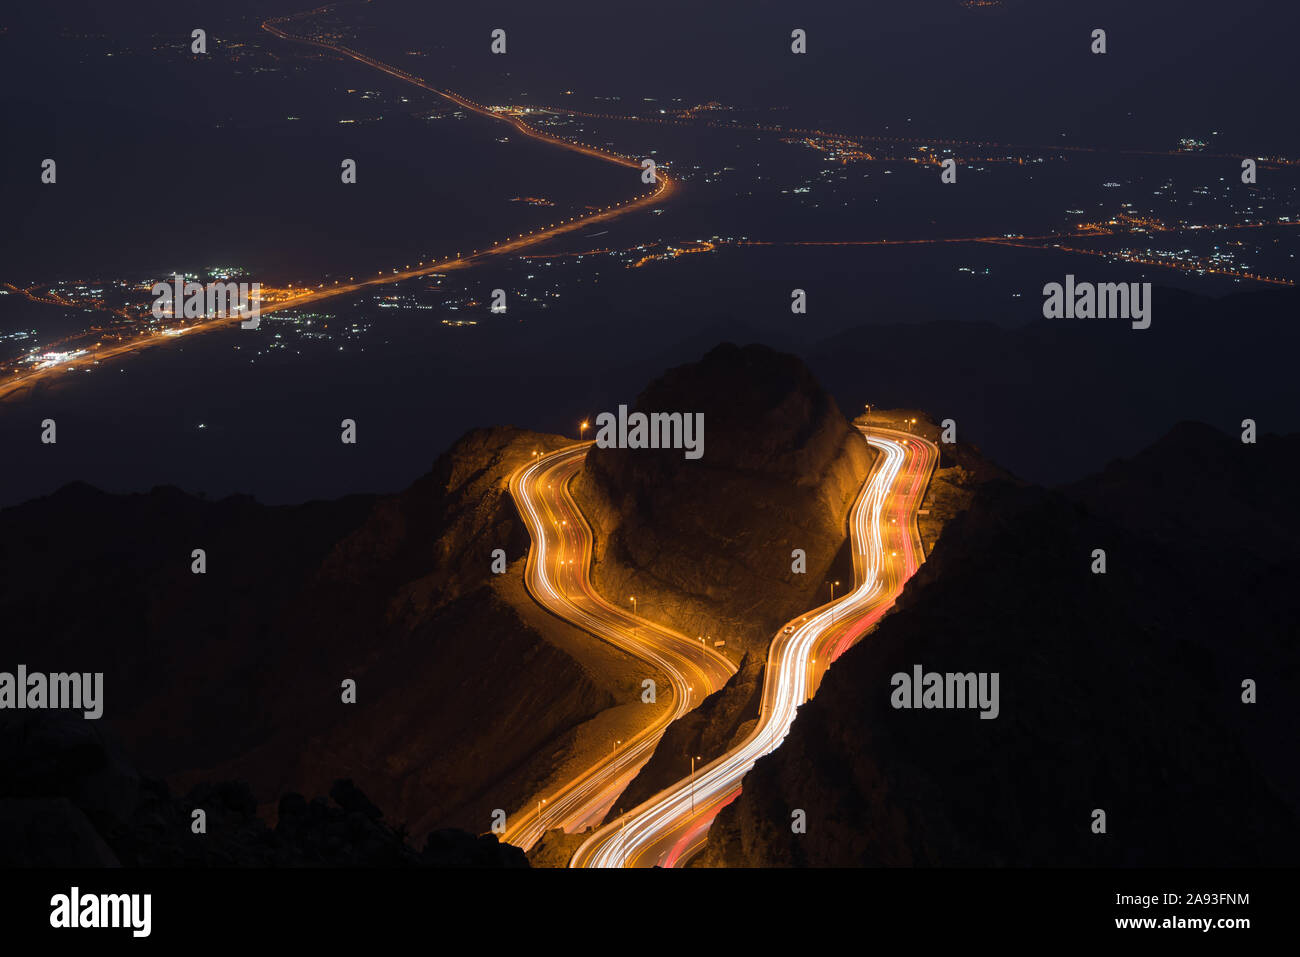 Al Hada Taif Road Vue de nuit Banque D'Images